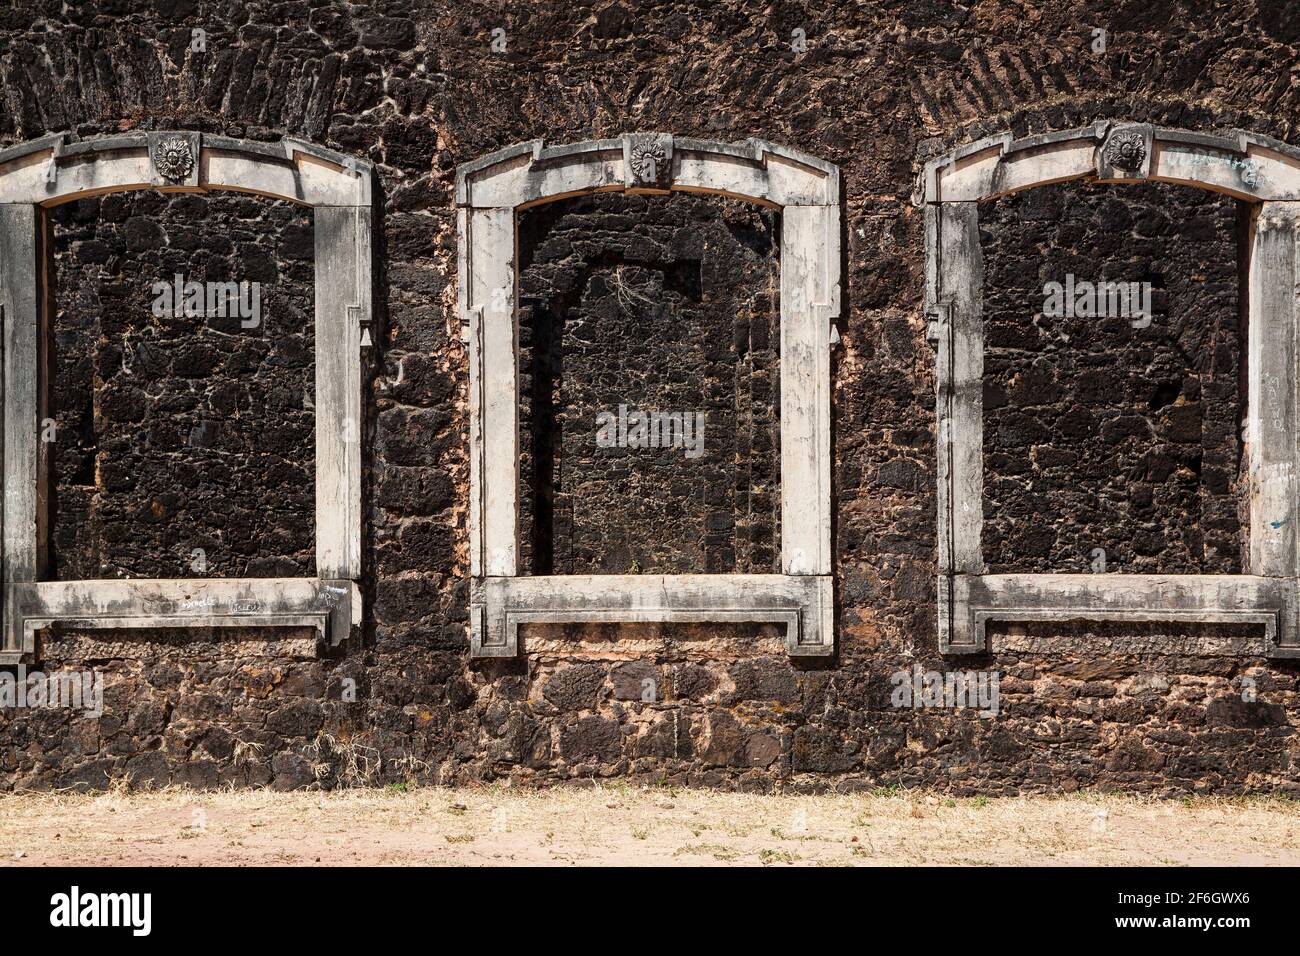 Blockierte Fenster, Ruinen in Alcantara, Maranhao, Brasilien - die Stadt wurde von der brasilianischen Regierung wegen der Ruinen der kolonialen und imperialen Zeit zum Nationalen Historischen Patrimony erklärt. Stockfoto